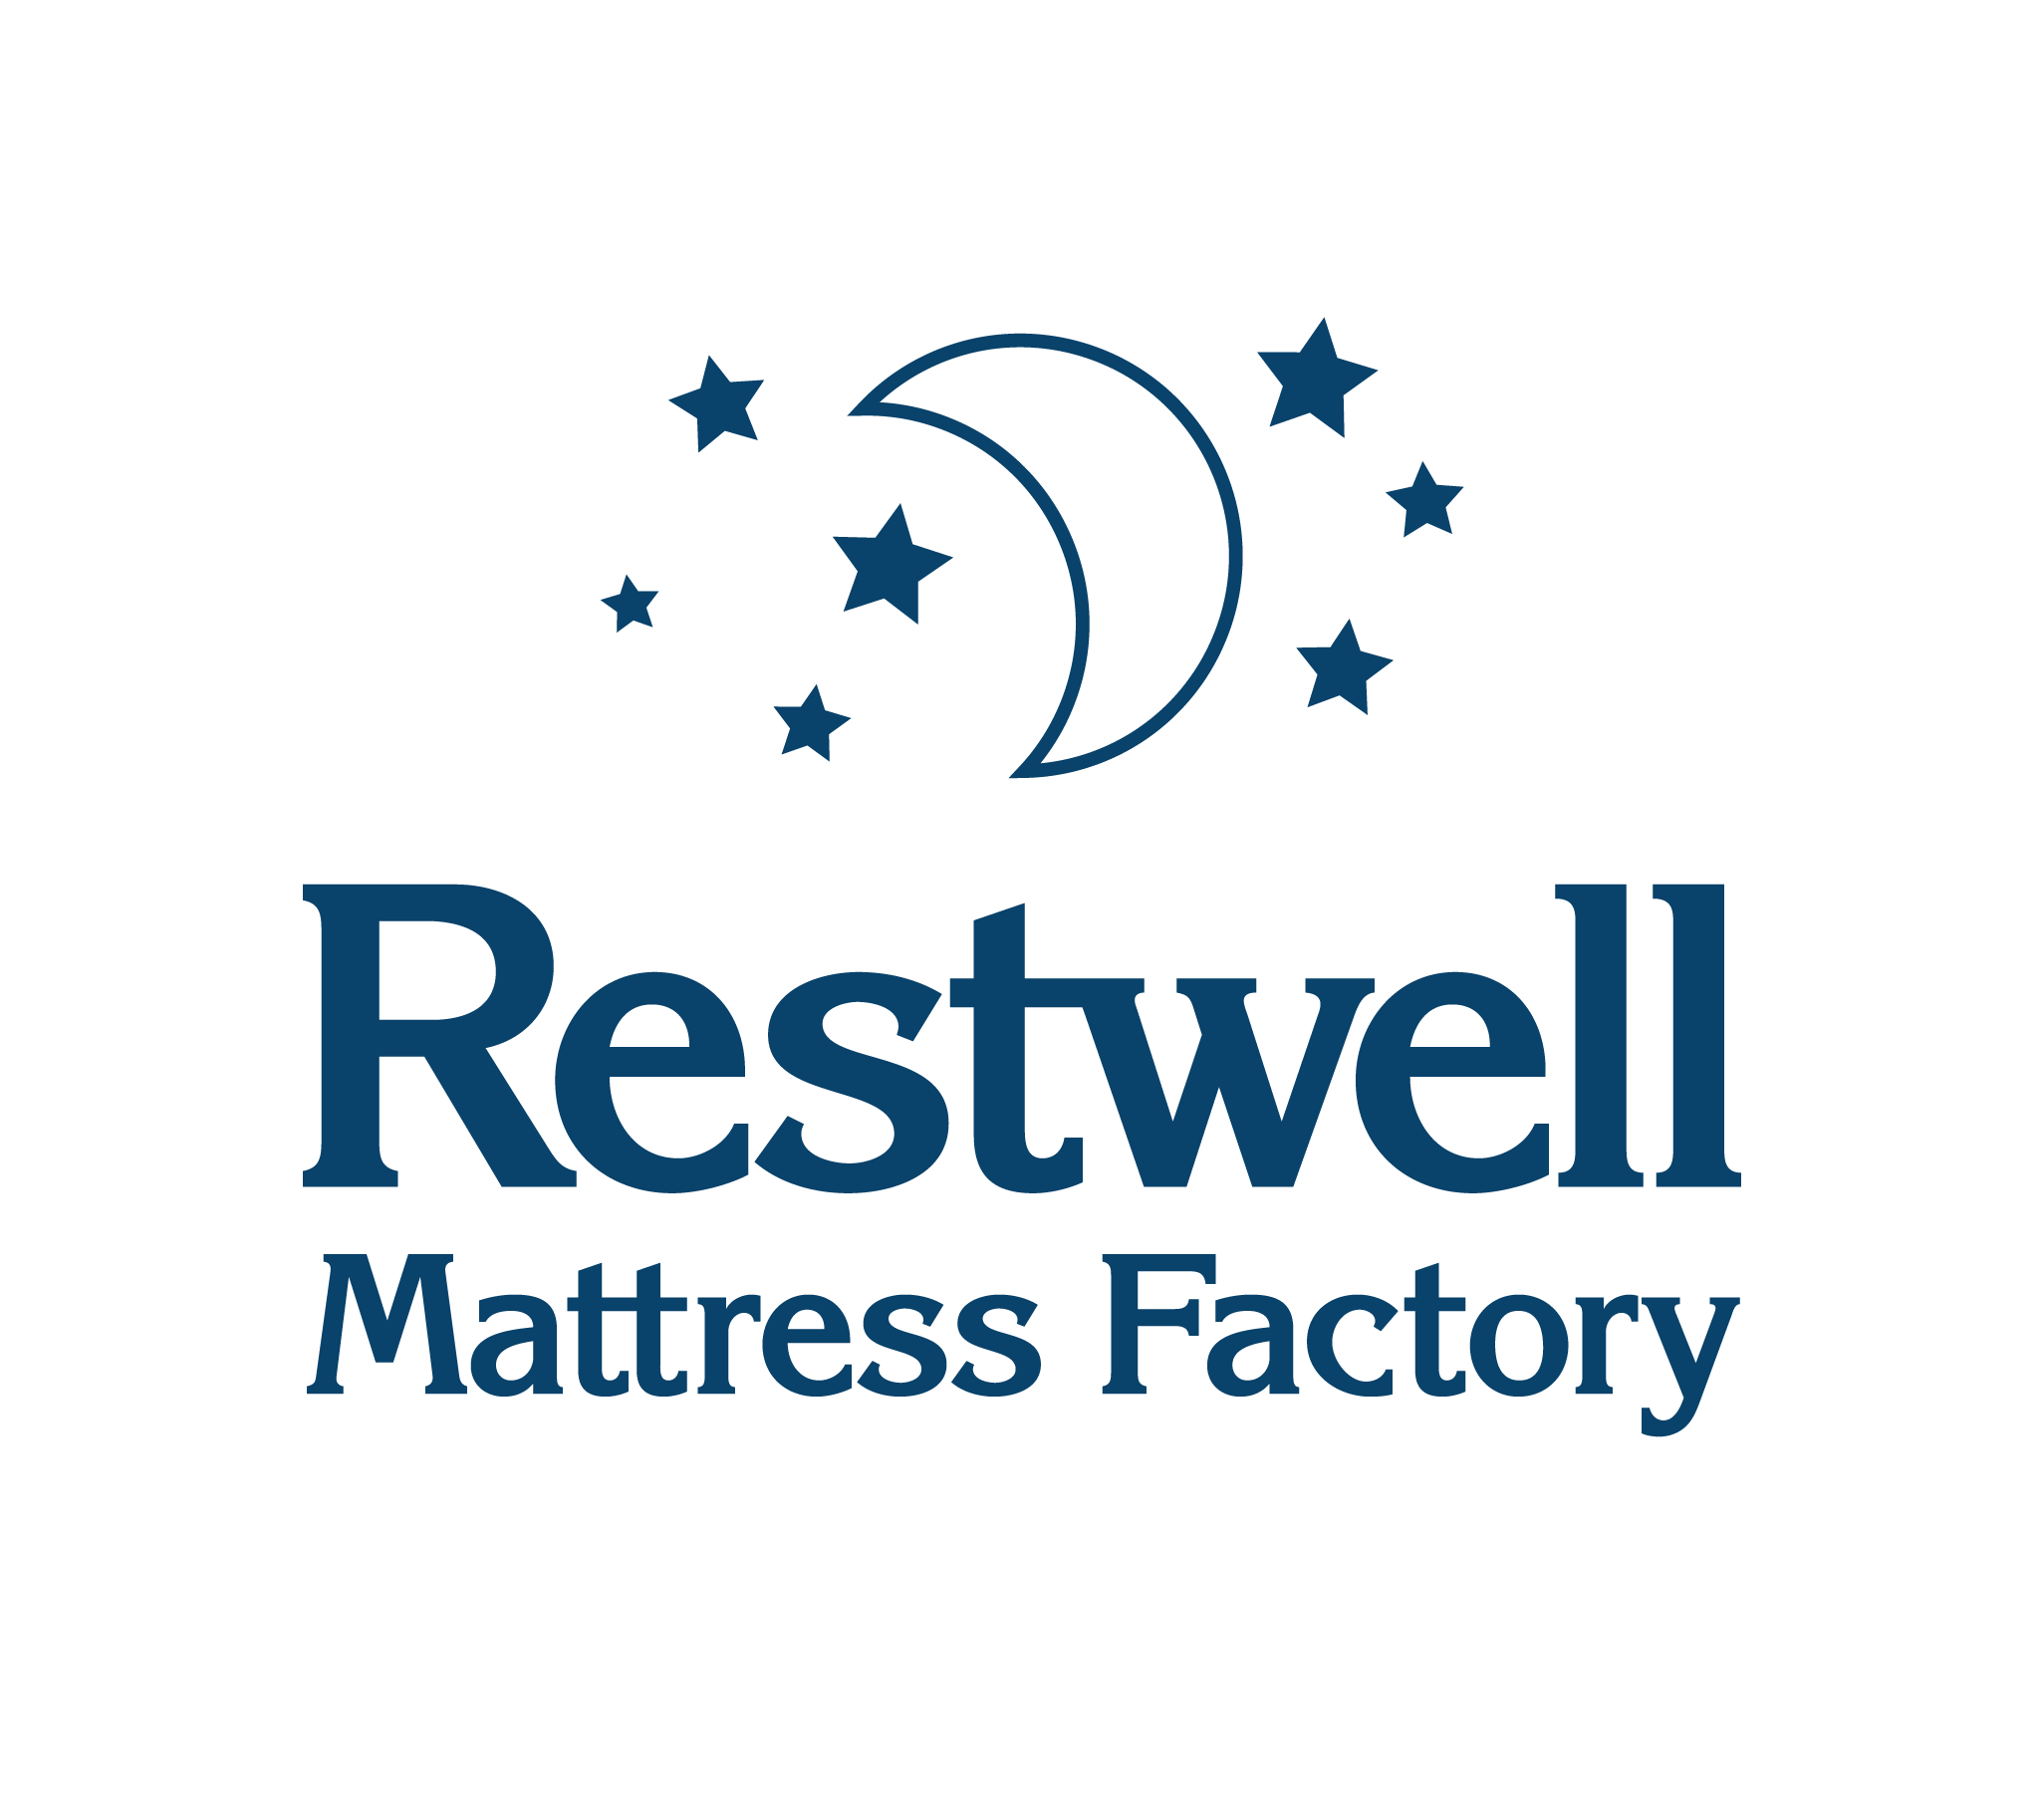 Restwell Mattress Factory